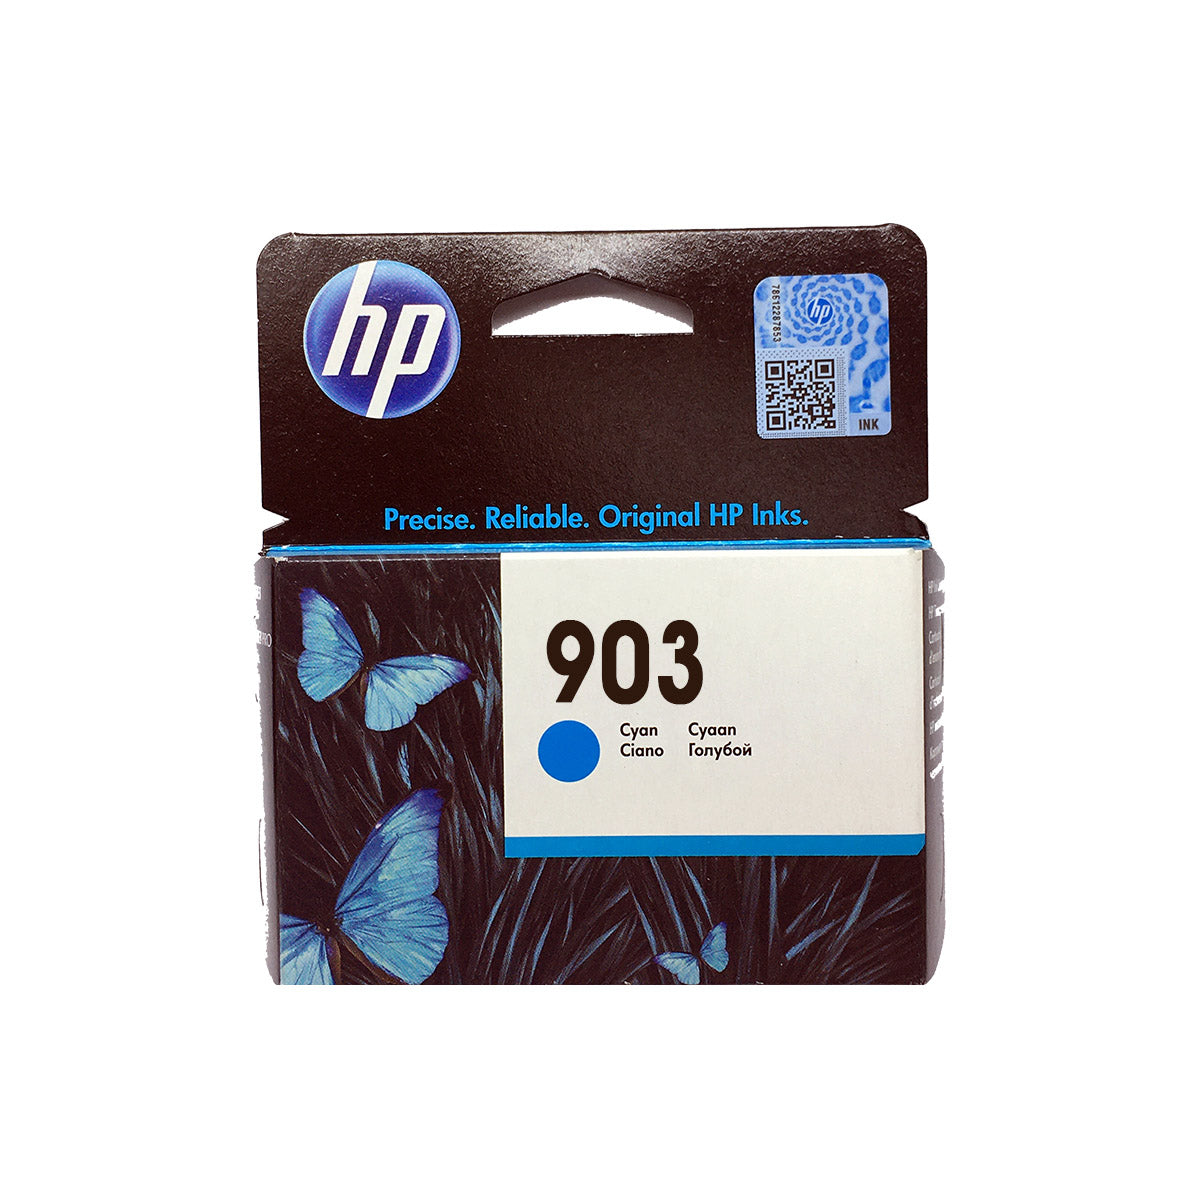 Shop HP 903 Original Ink Cartridge Cyan Color online in Abu Dhabi, UAE